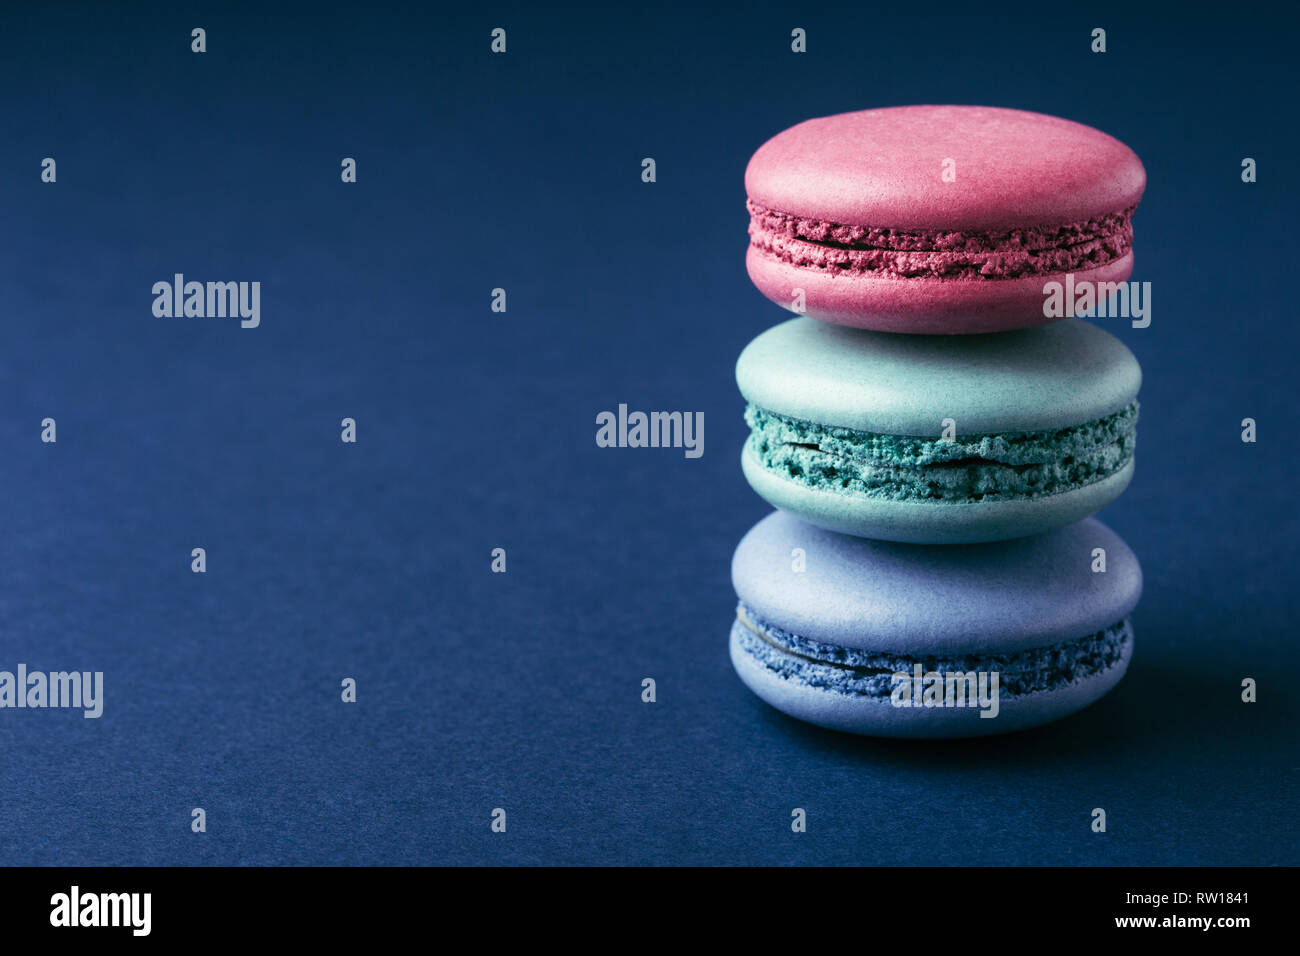 Stapel von drei bunte Macarons auf dunkelblauem Hintergrund mit kopieren. Stockfoto